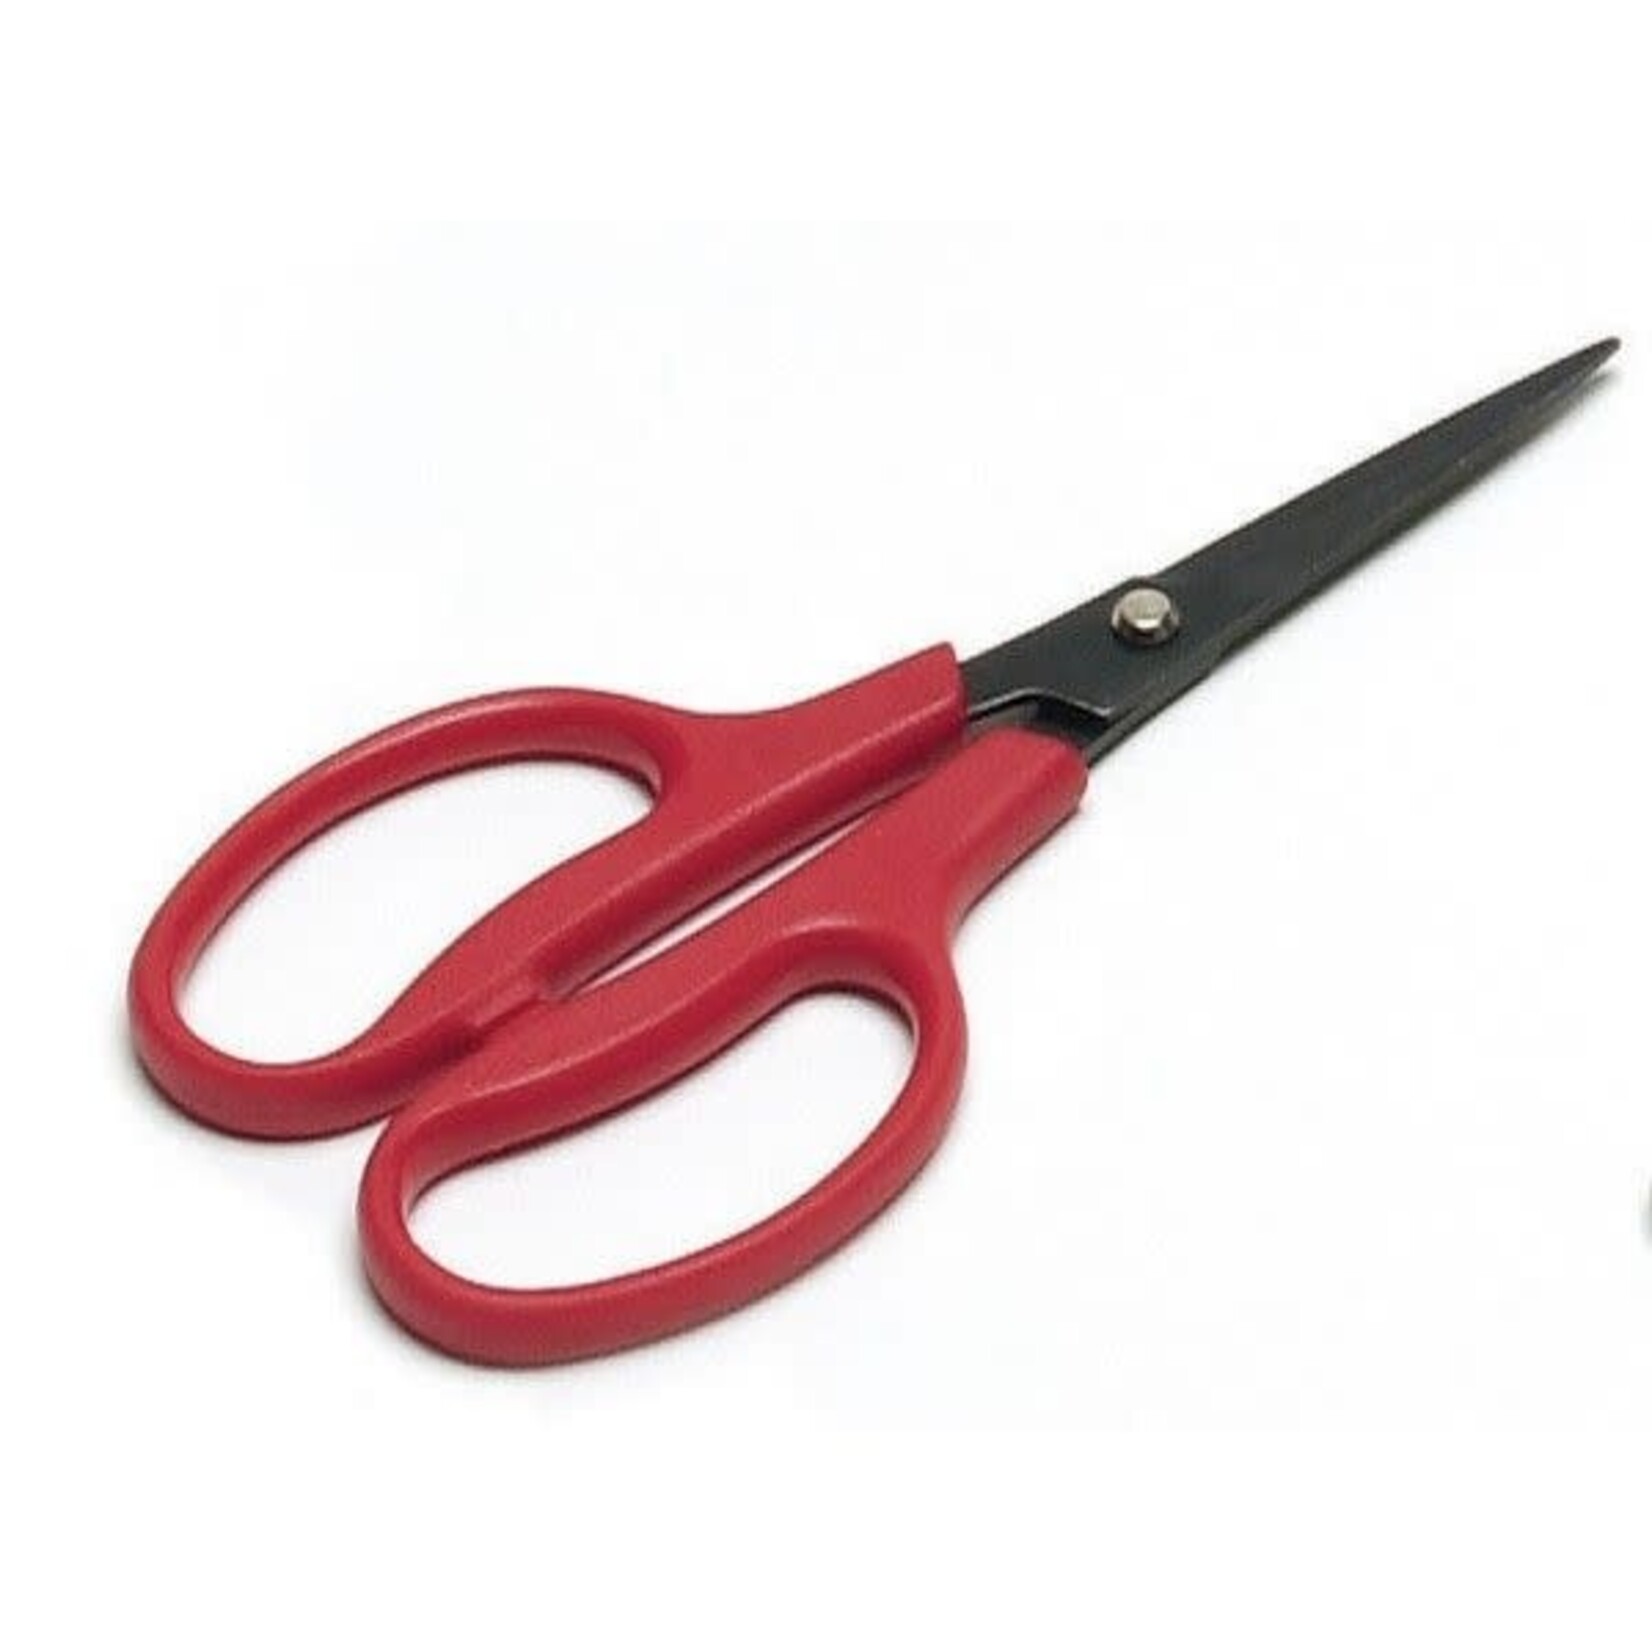 Equi-Essentials Magic Leather Scissors